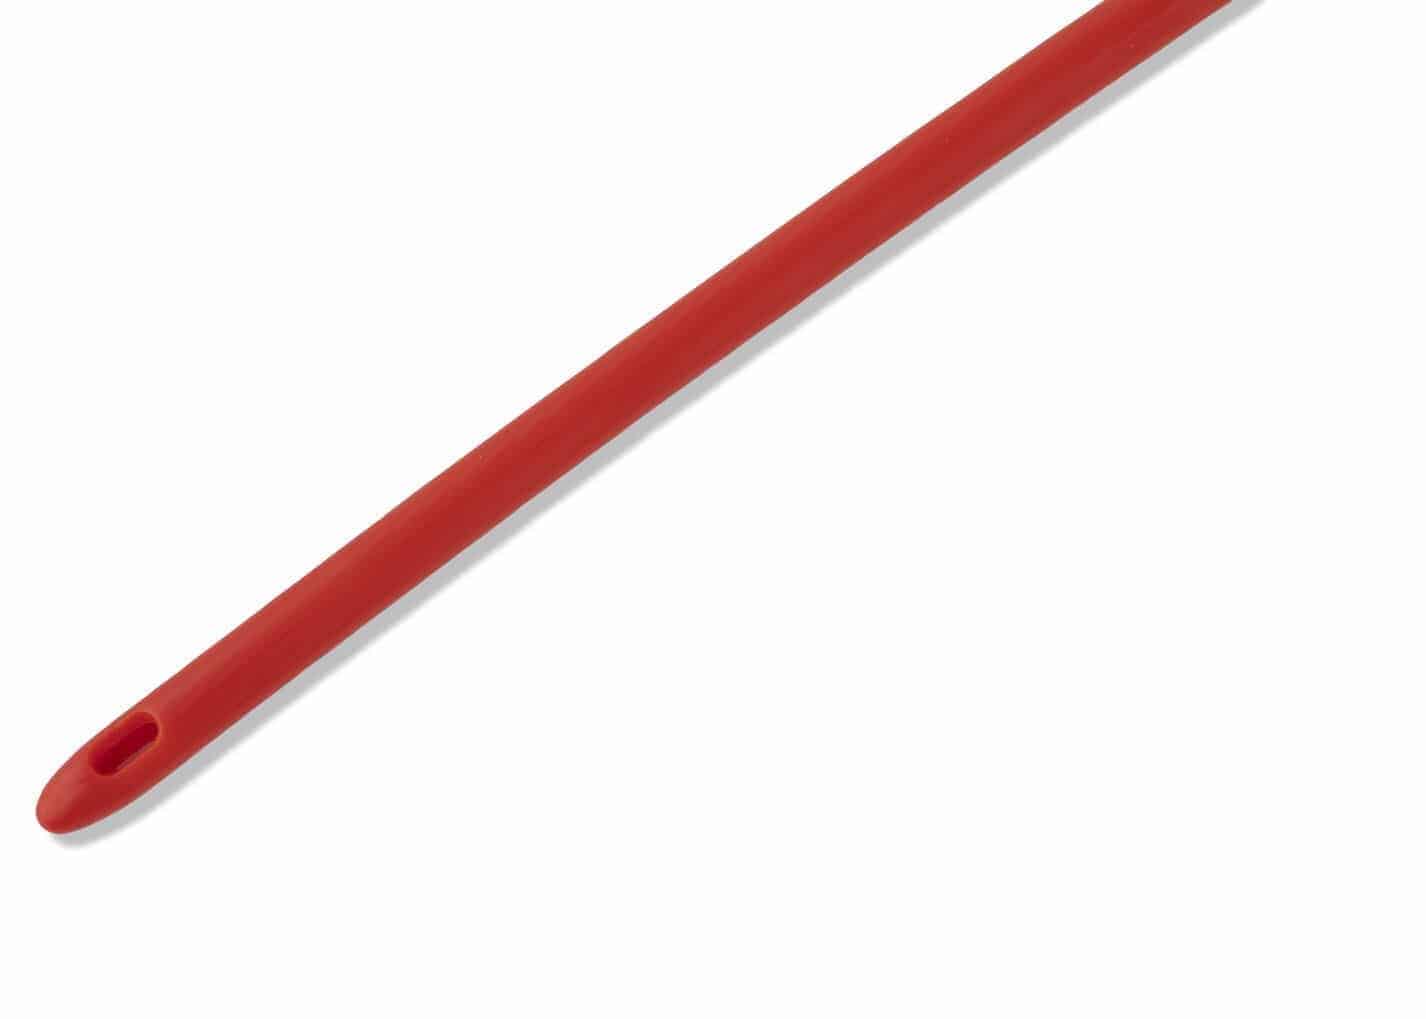 Medline Red-Rubber-Male-Length-Catheter-Straight-Tip